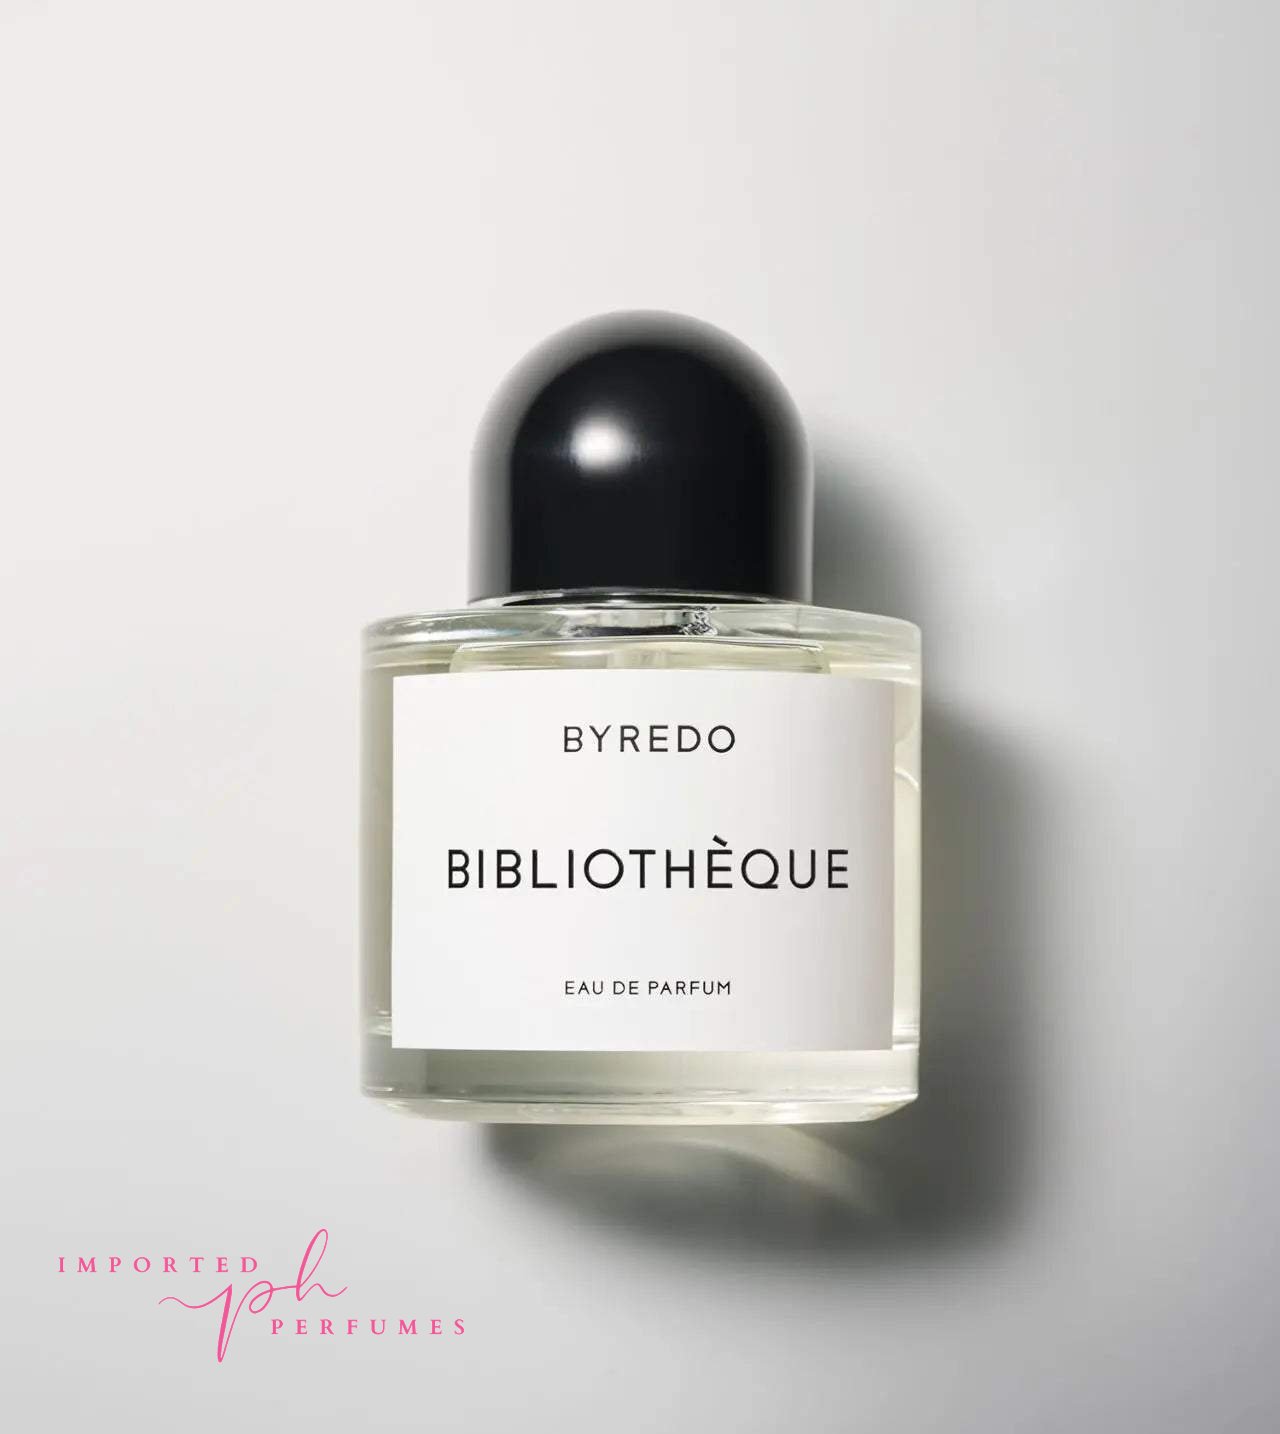 Byredo Bibliothèque Eau De Parfum For Unisex 100ml-Imported Perfumes Co-Byredo,Byredo unisex,for men,for women,men,unisex,women